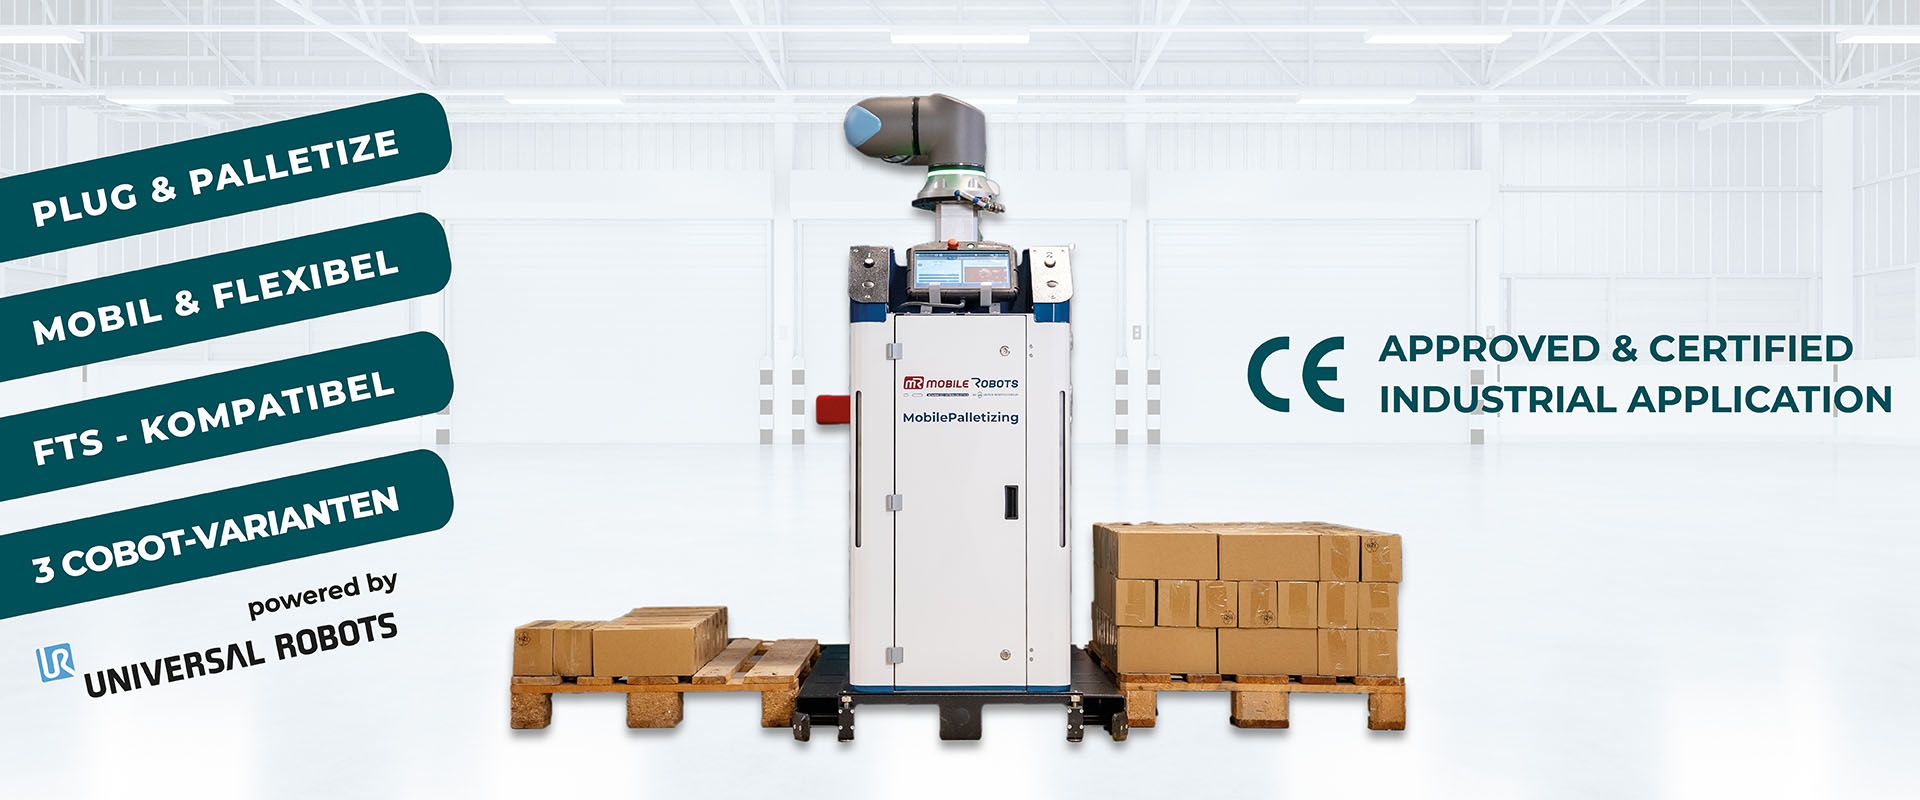 Die Plug & Palletizing Lösung von MobilePalletizing von mR MOBILE ROBOTS mit Universal Robots ist eine CE zertifizierte Industrie-Anwendung.